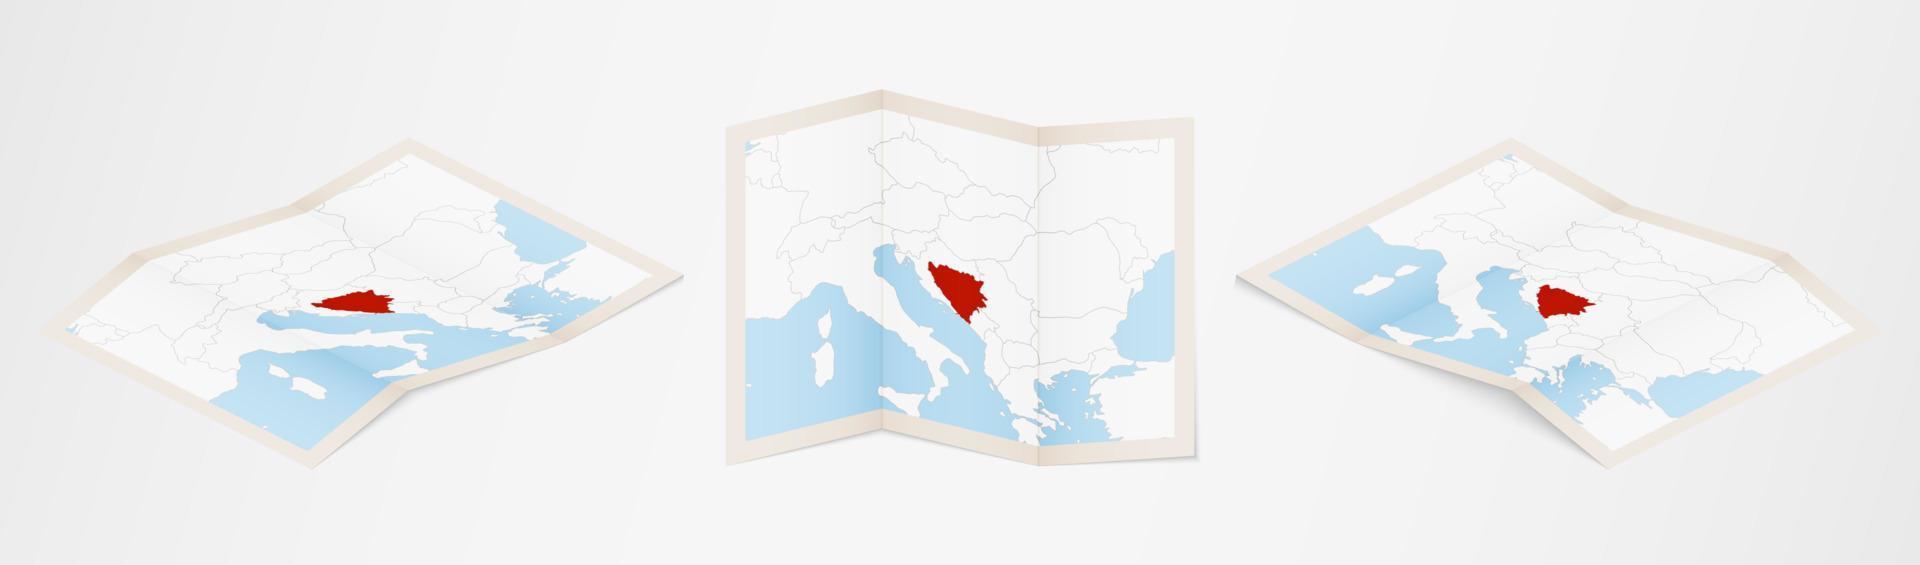 carte pliée de bosnie-herzégovine en trois versions différentes. vecteur